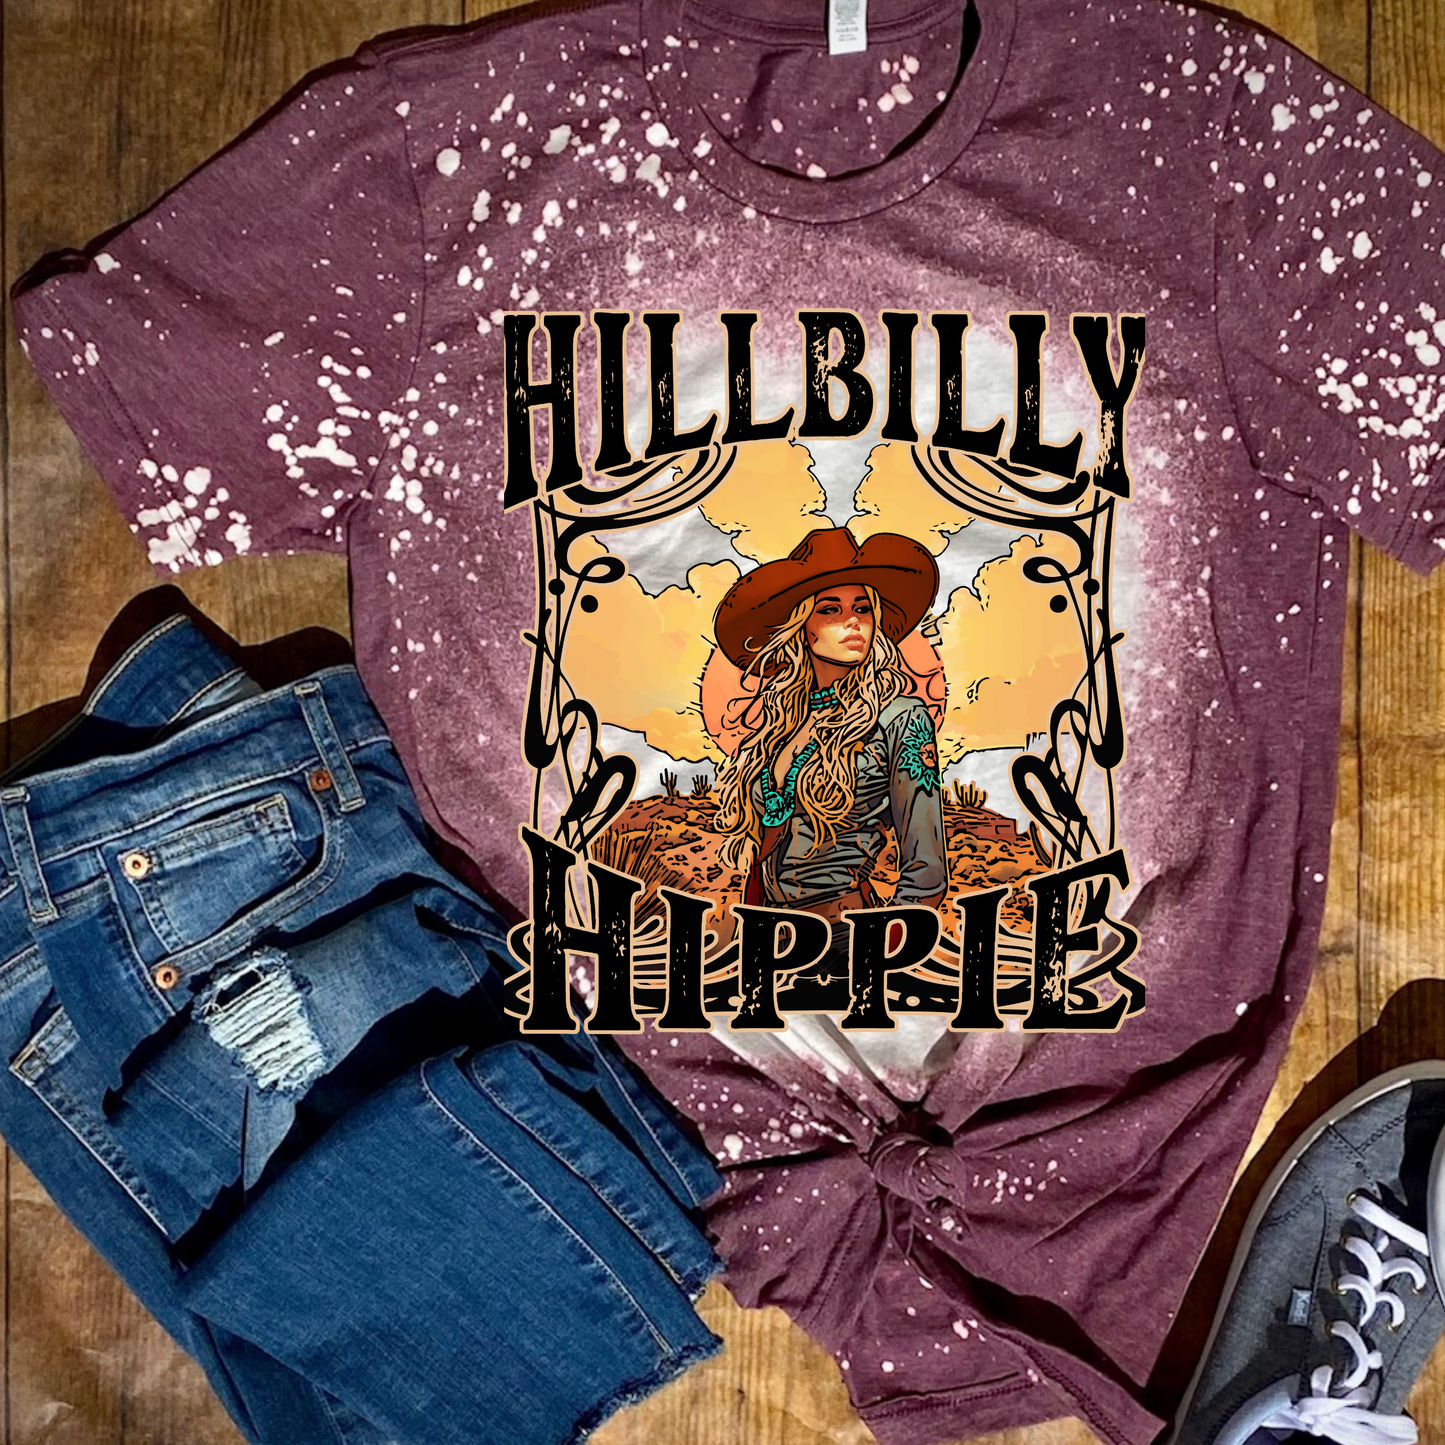 Hilbilly Hippie